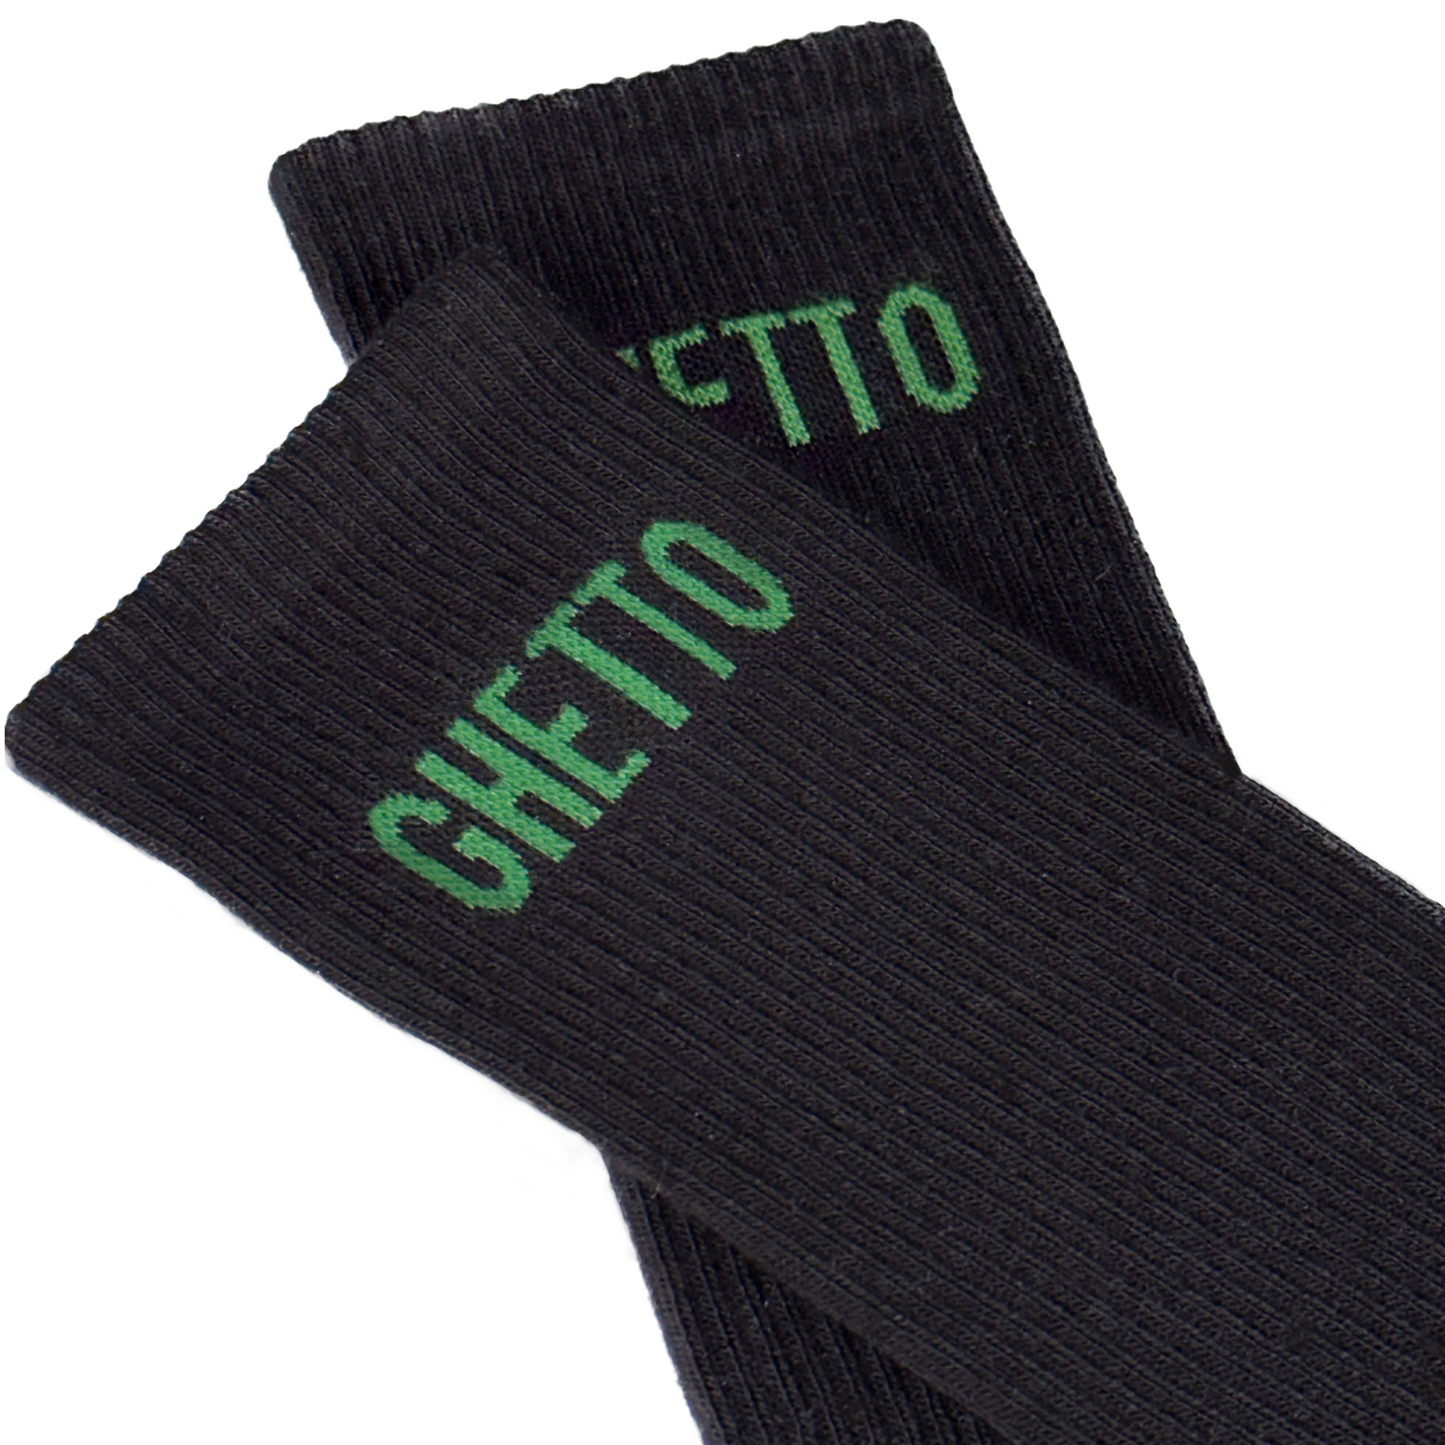 BLACK/GREEN Ghetto Socks